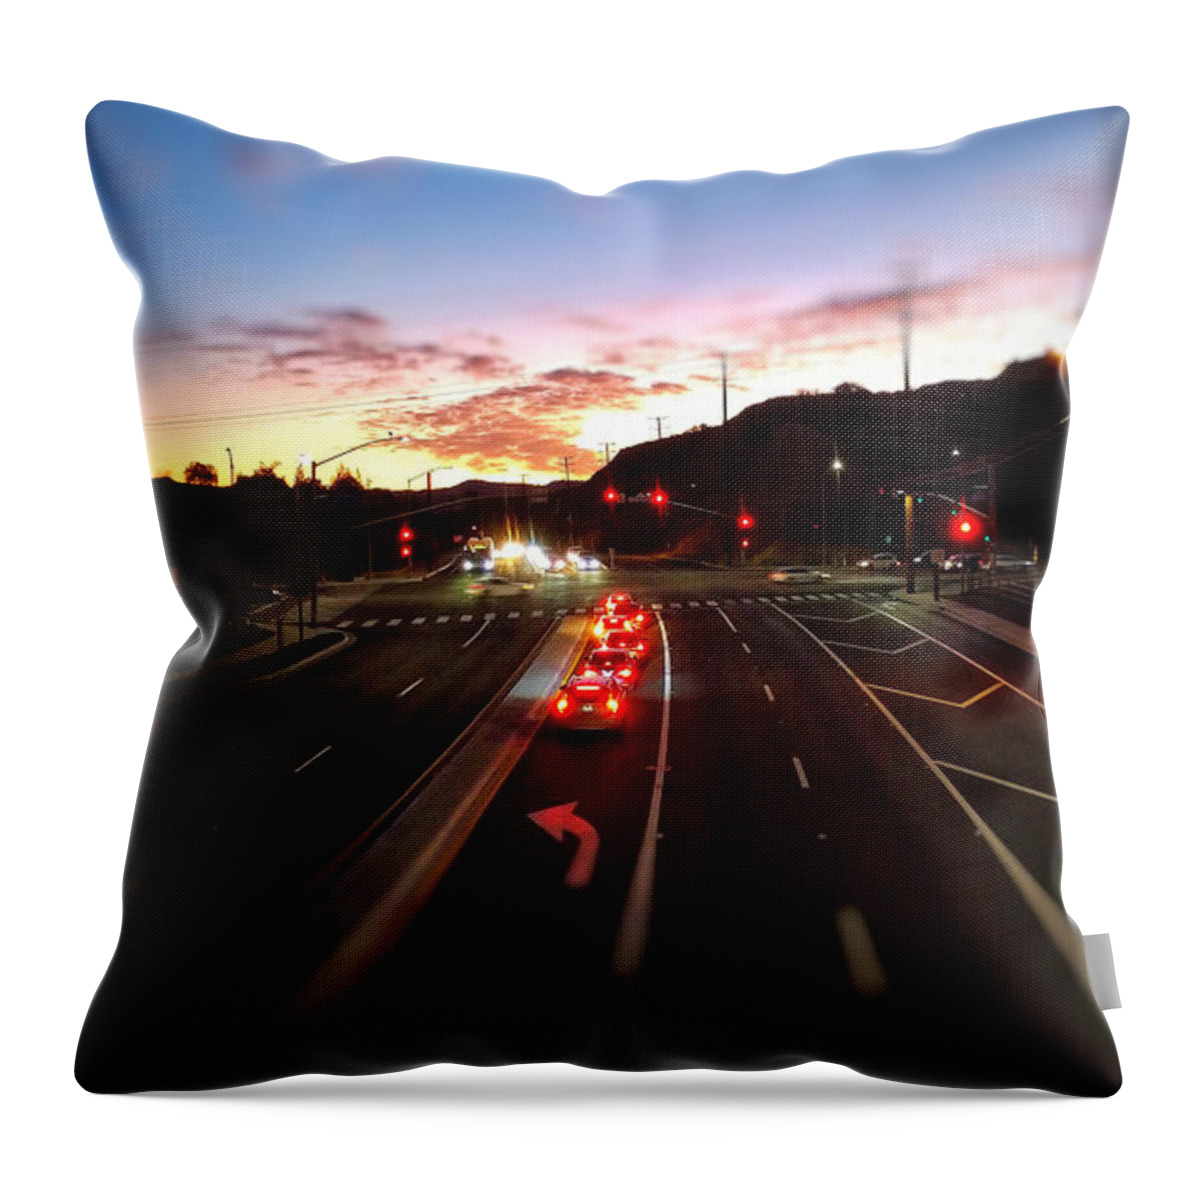 Sunset Throw Pillow featuring the photograph Evening Traffic by David Zumsteg